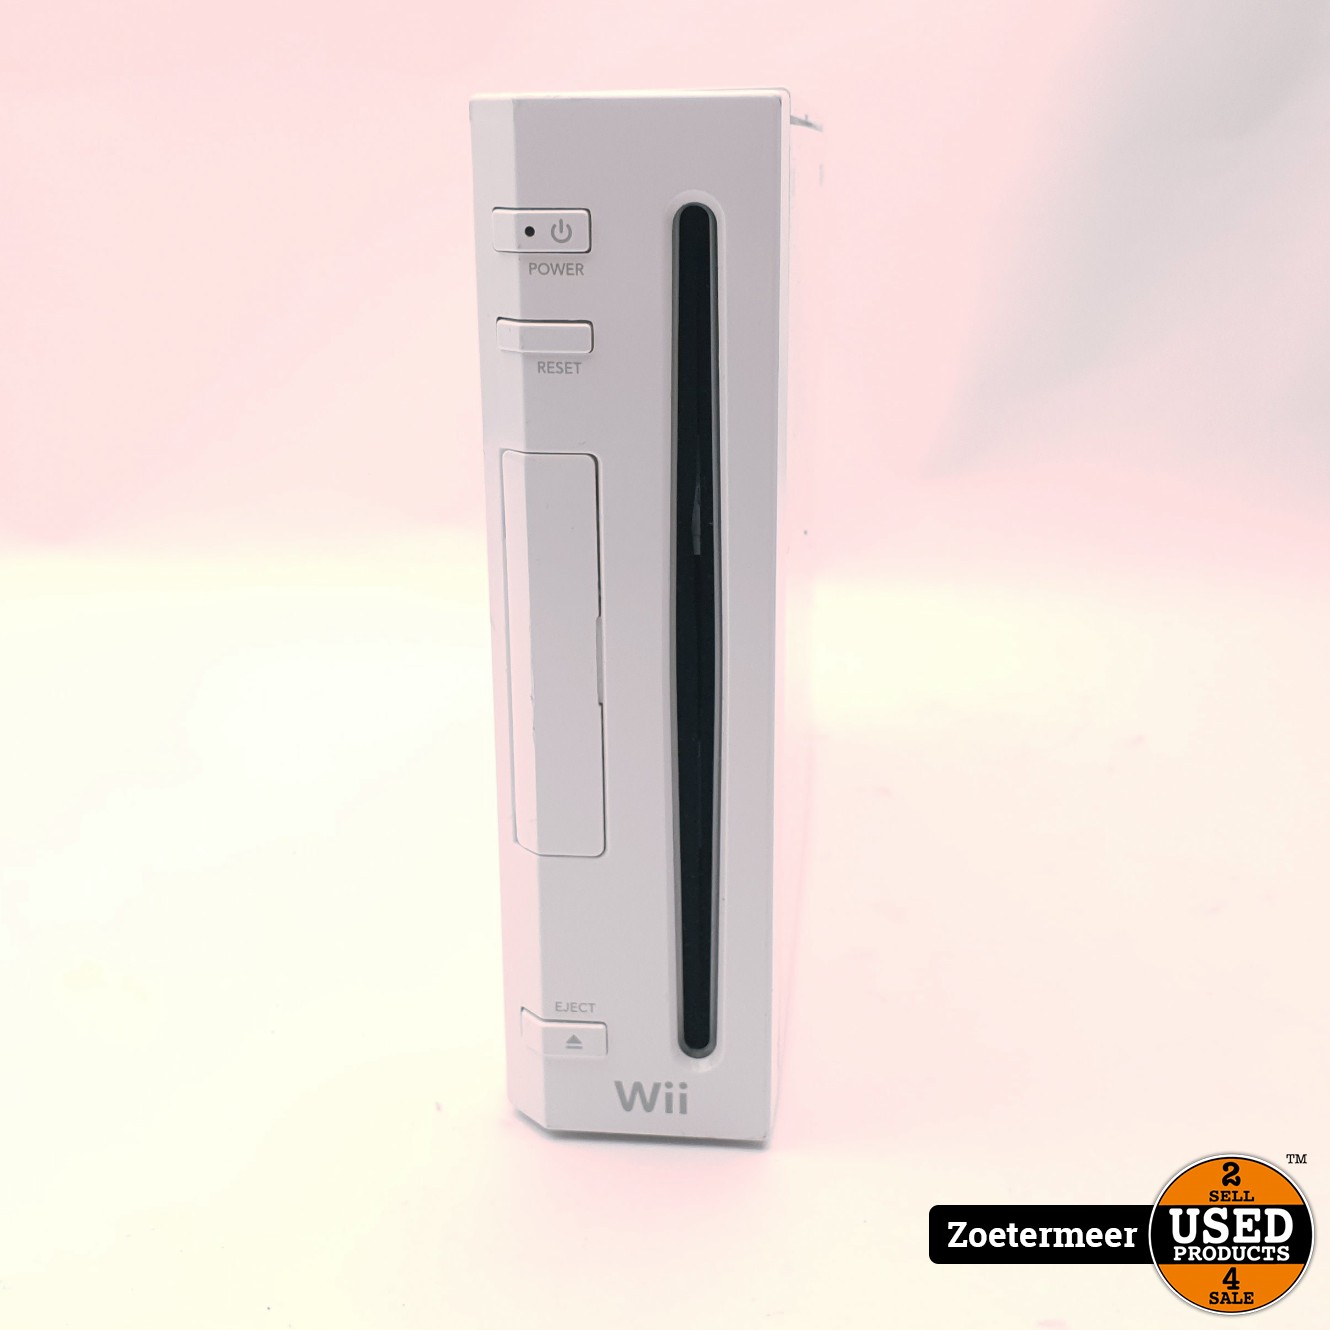 Onzorgvuldigheid Kwade trouw roestvrij Nintendo Wii Wit + Kabel - Excl. Controller - Used Products Zoetermeer